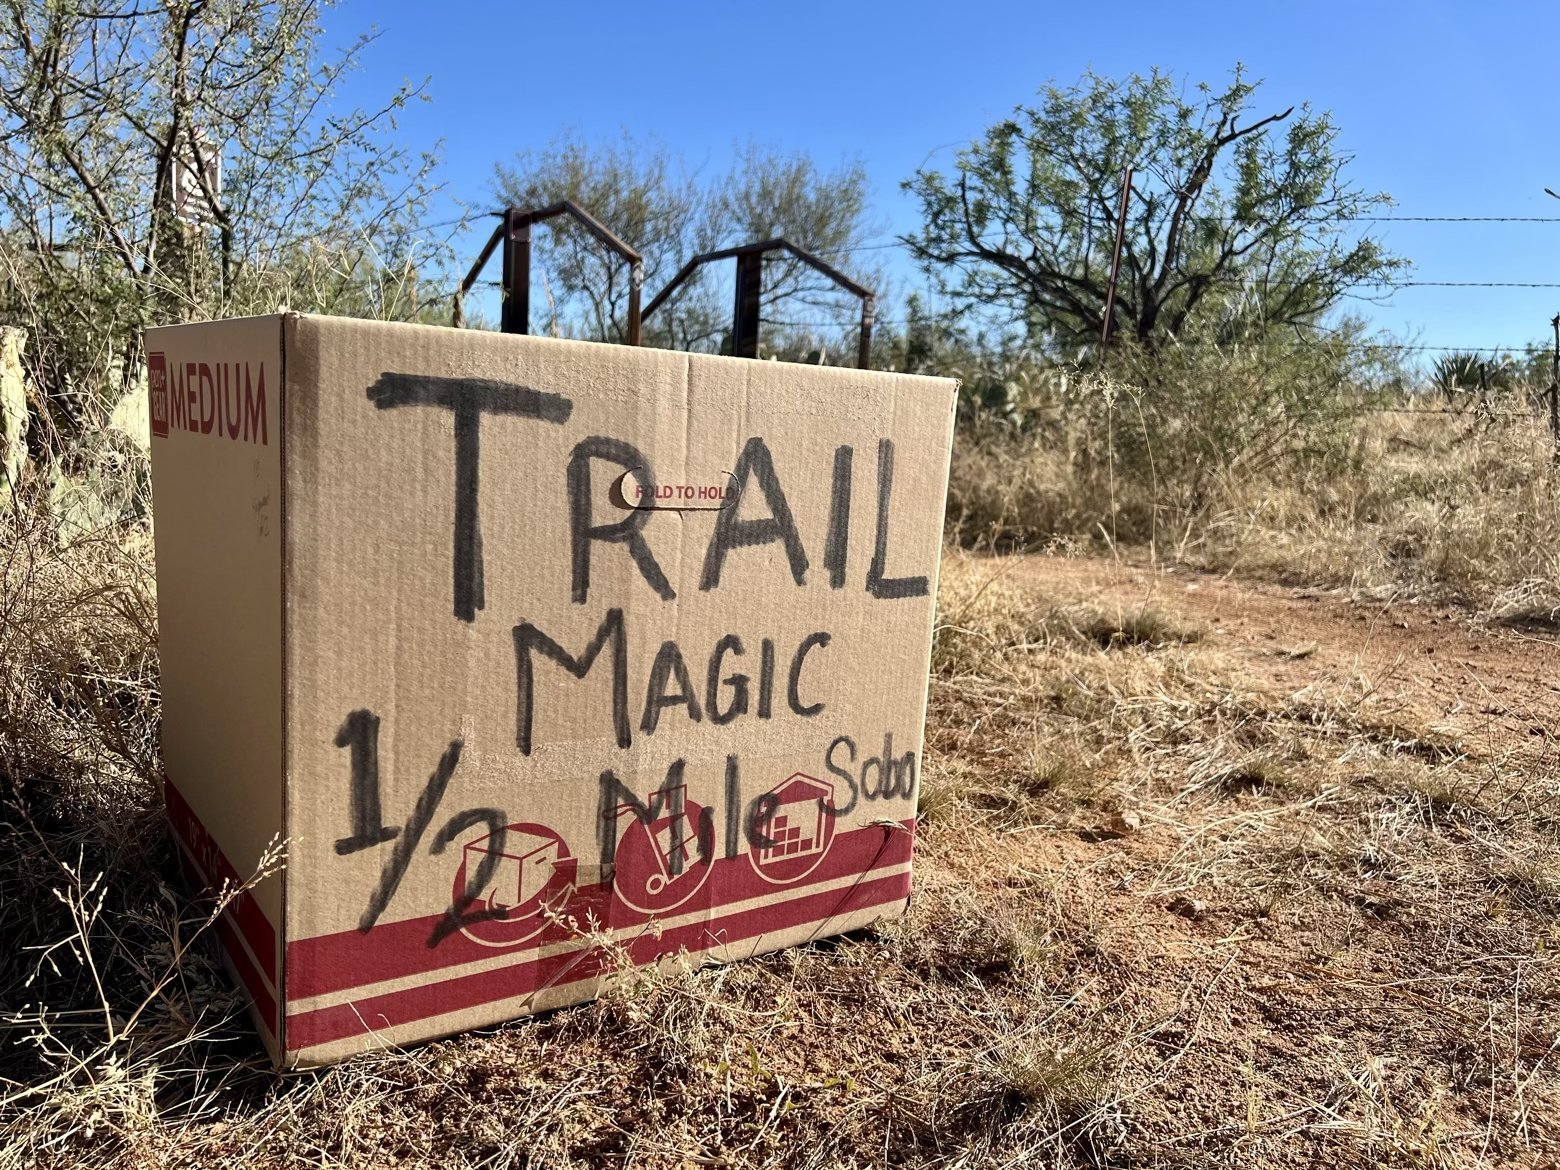 Trail magic, straight ahead